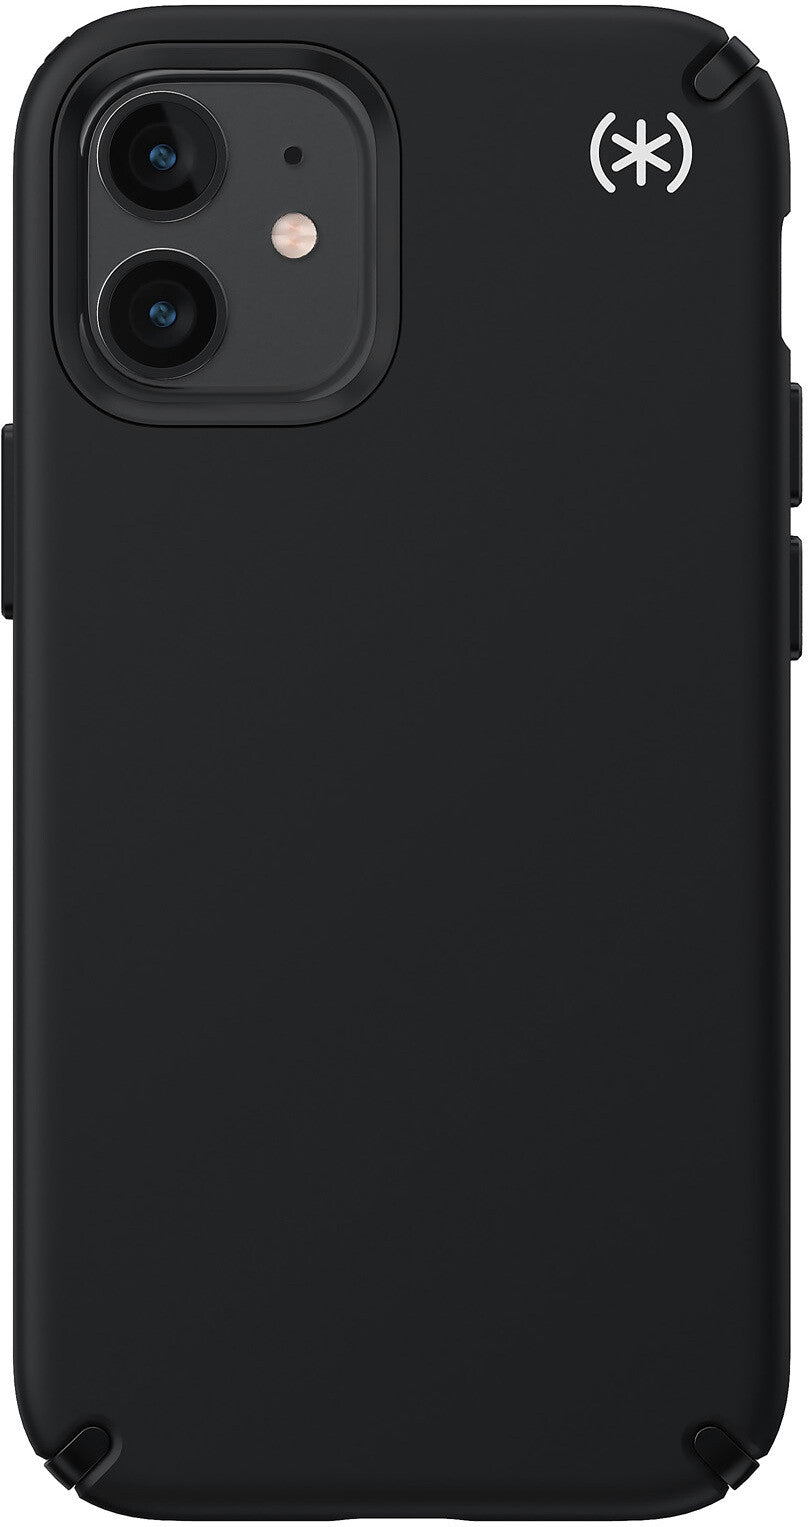 Speck Presidio2 Pro for iPhone 12 Mini in Black